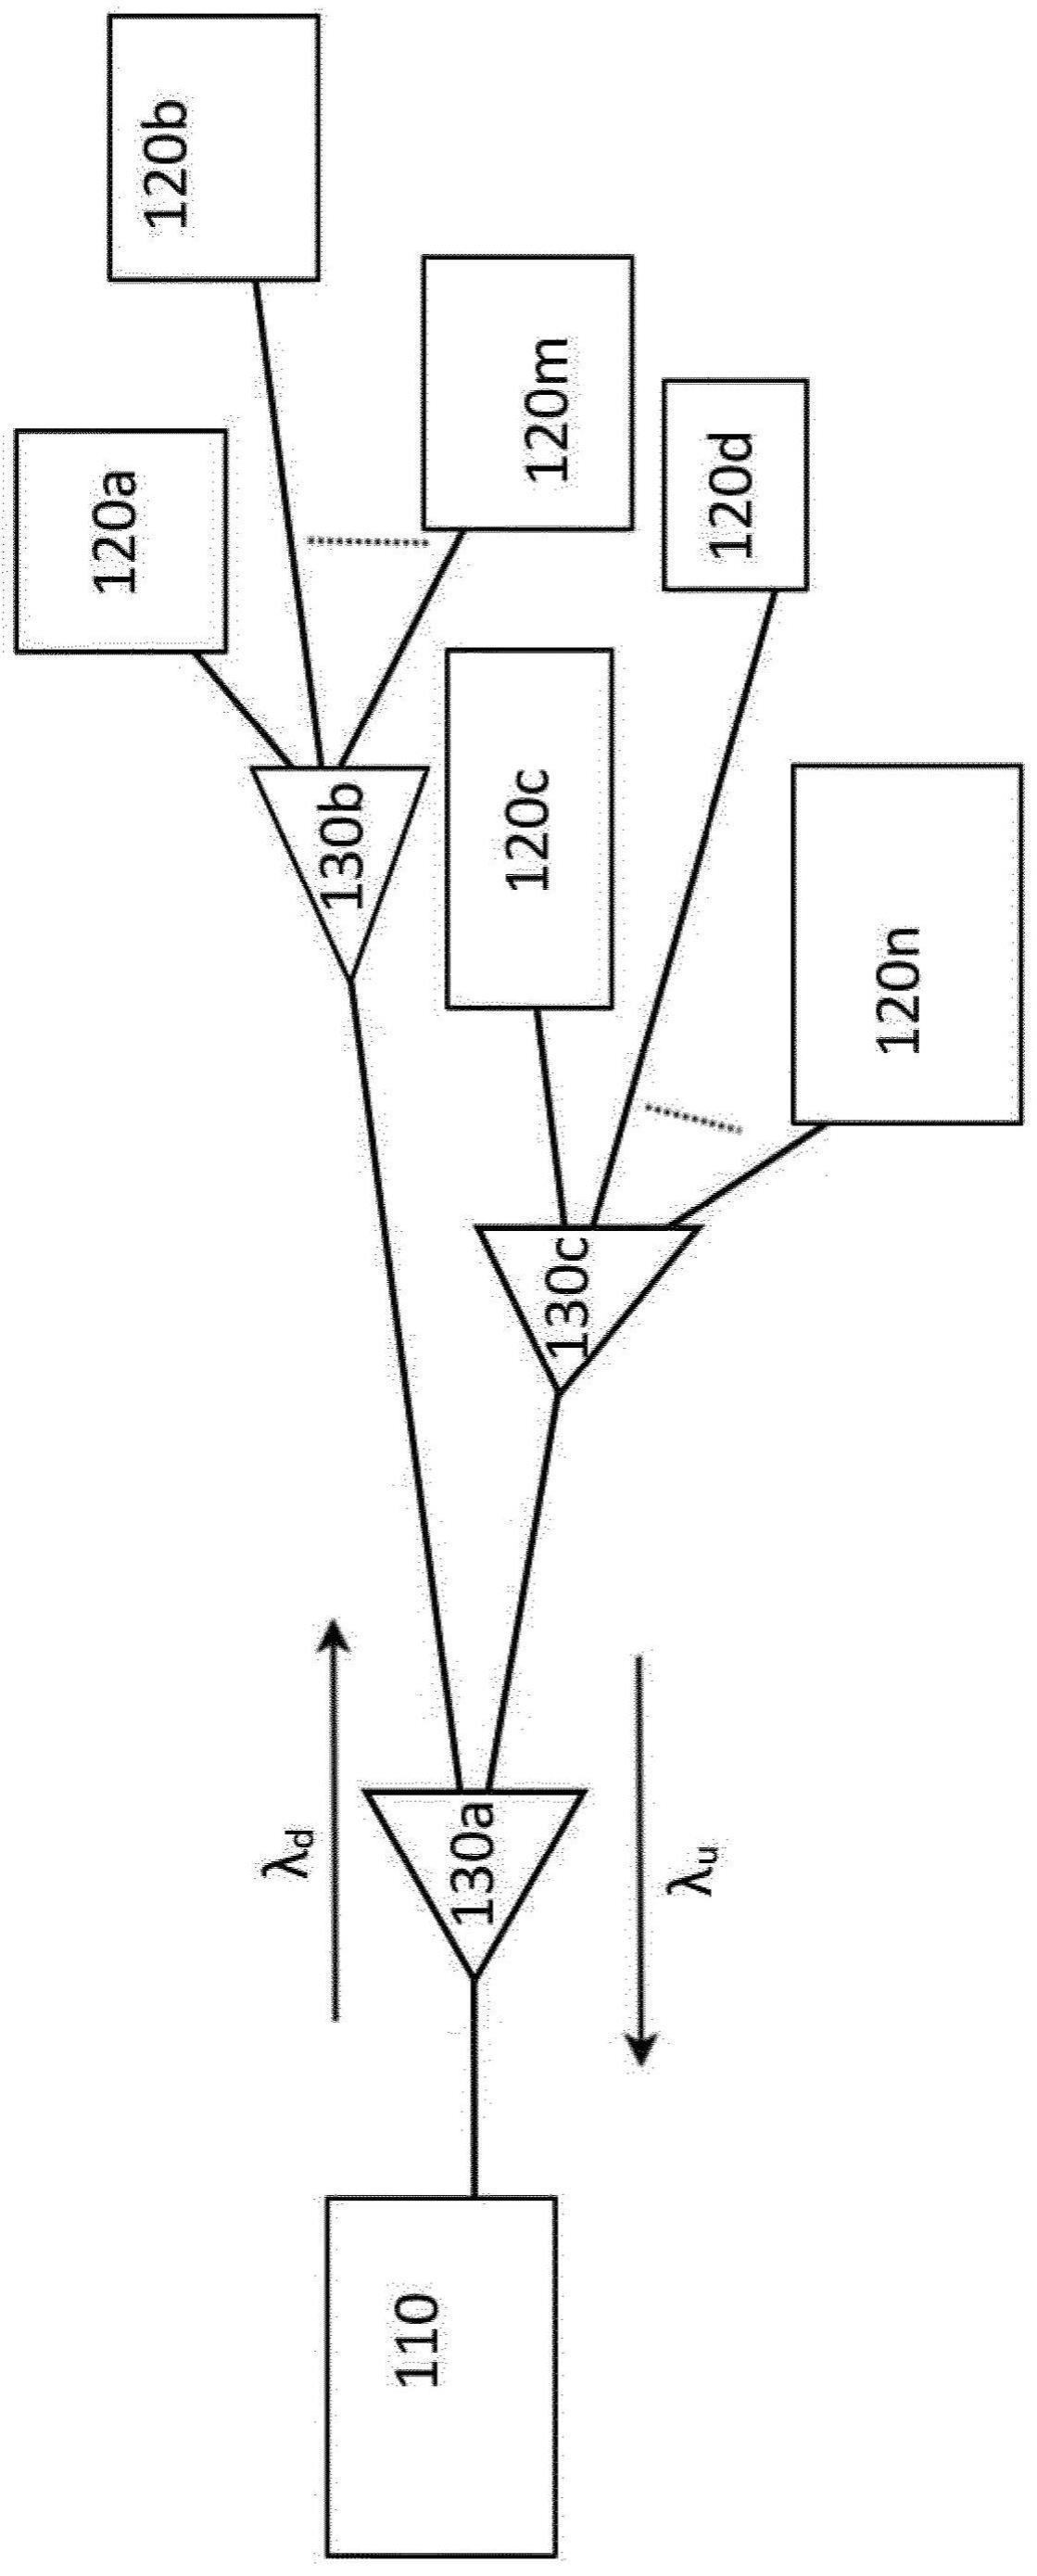 操作光学网络单元的方法以及用于执行该方法的光学网络单元、光学线路终端和计算机软件与流程